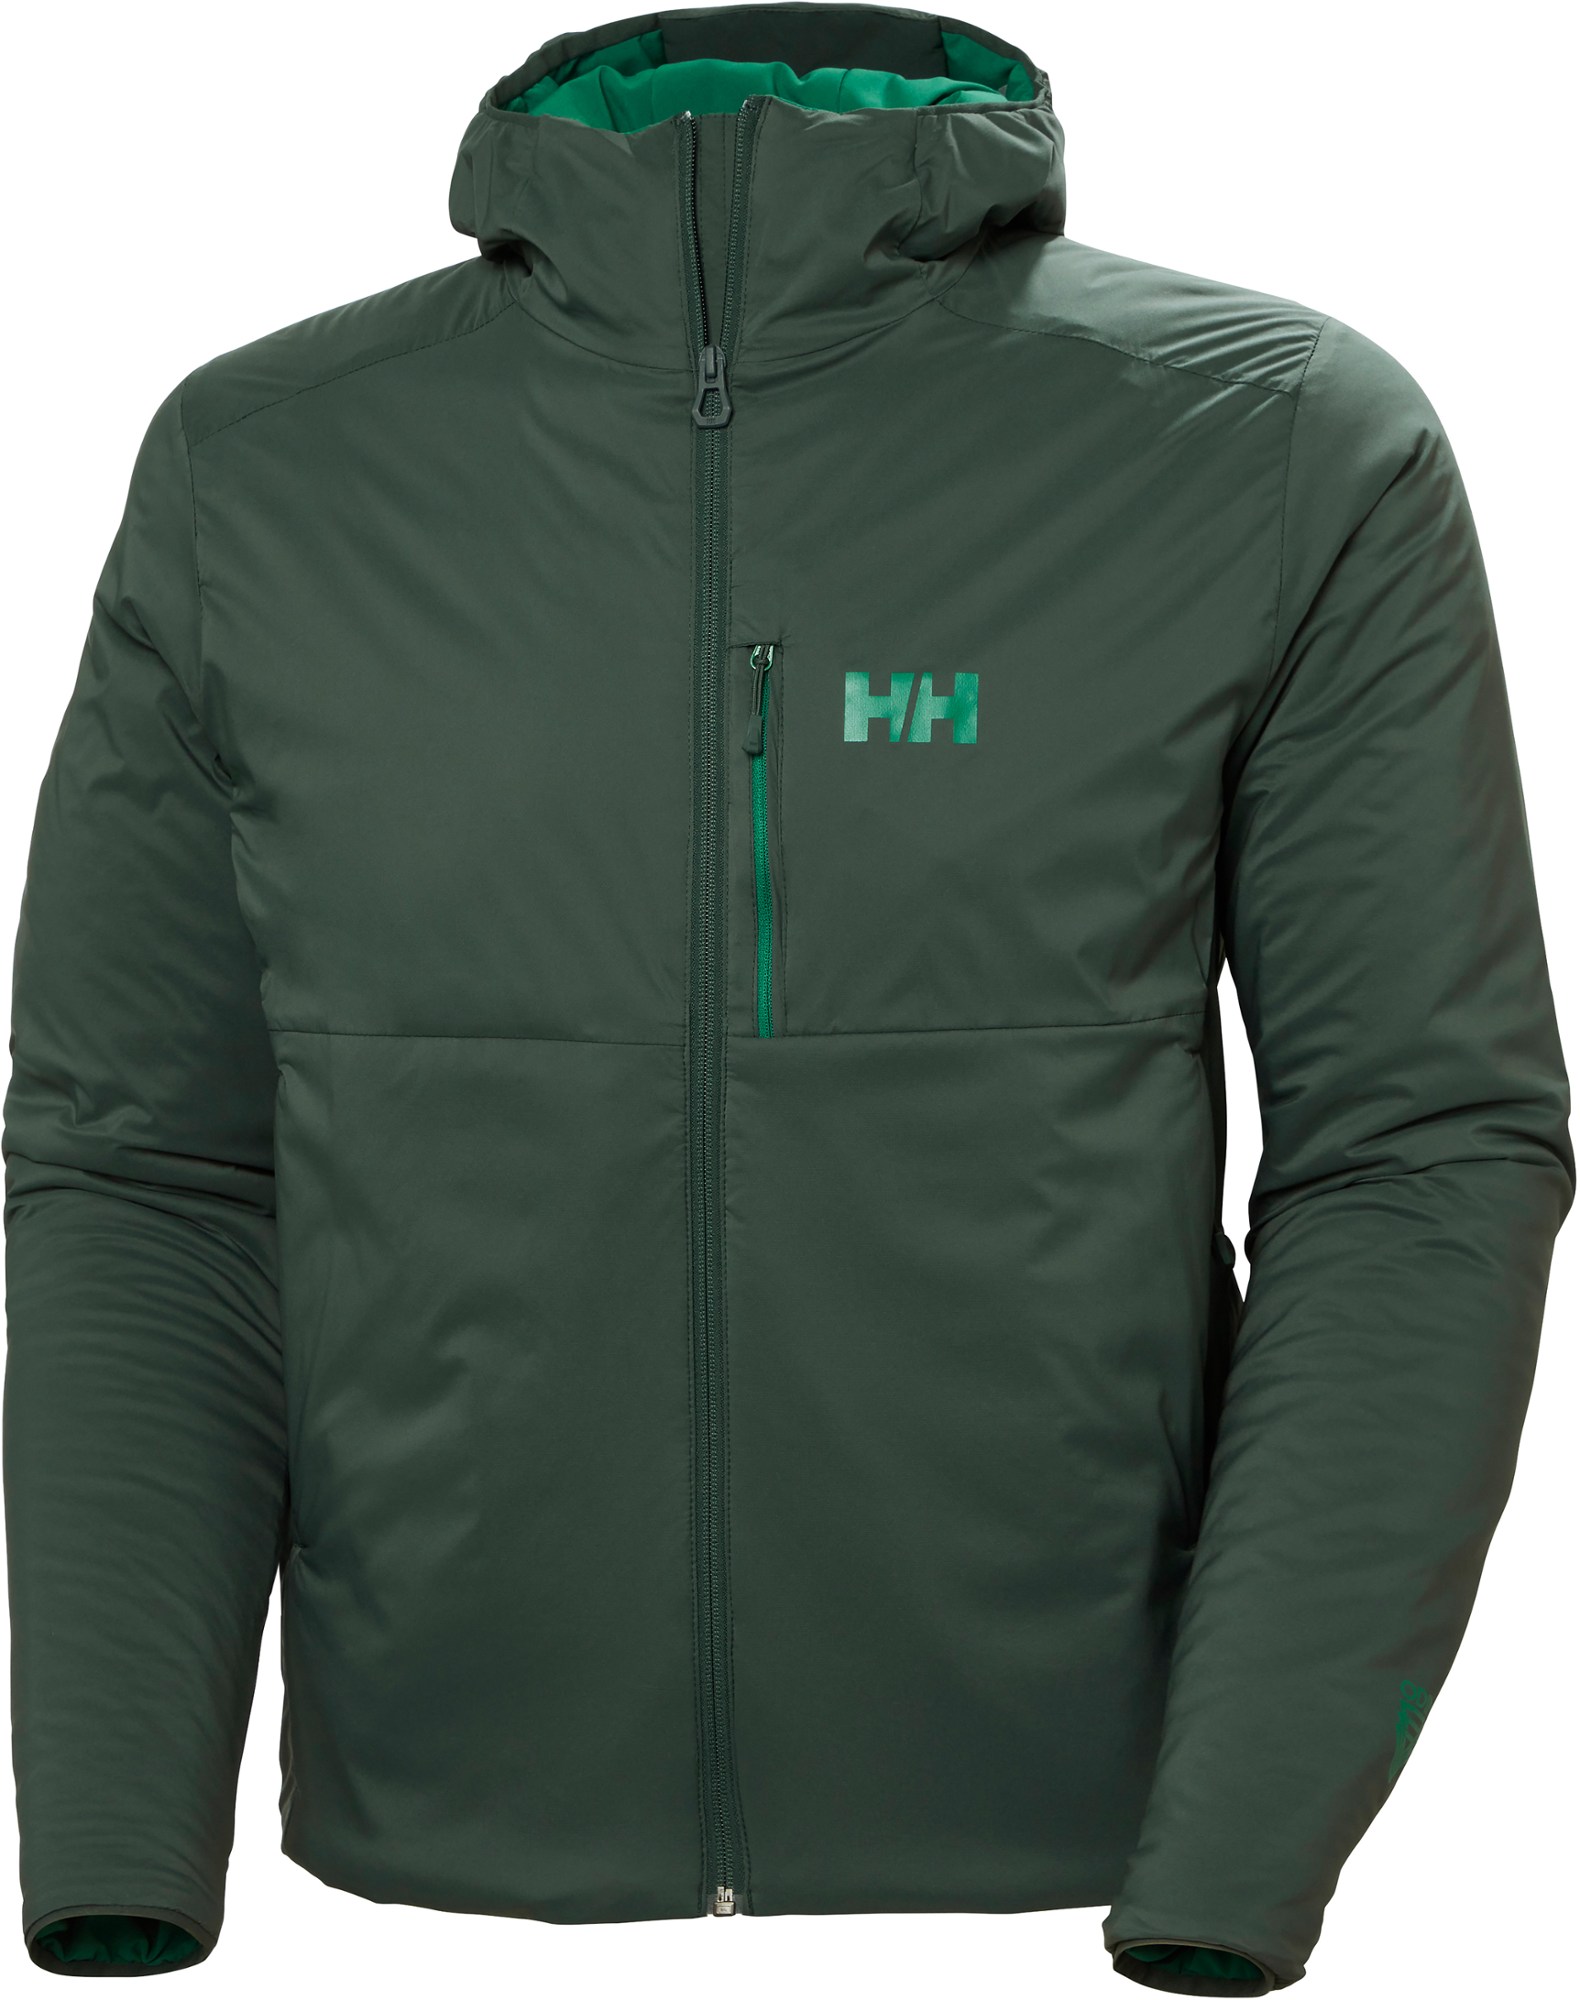 Утепленная куртка Odin Stretch Hooded - Мужская Helly Hansen, зеленый куртка helly hansen sirdal hooded insulator цвет terrazzo